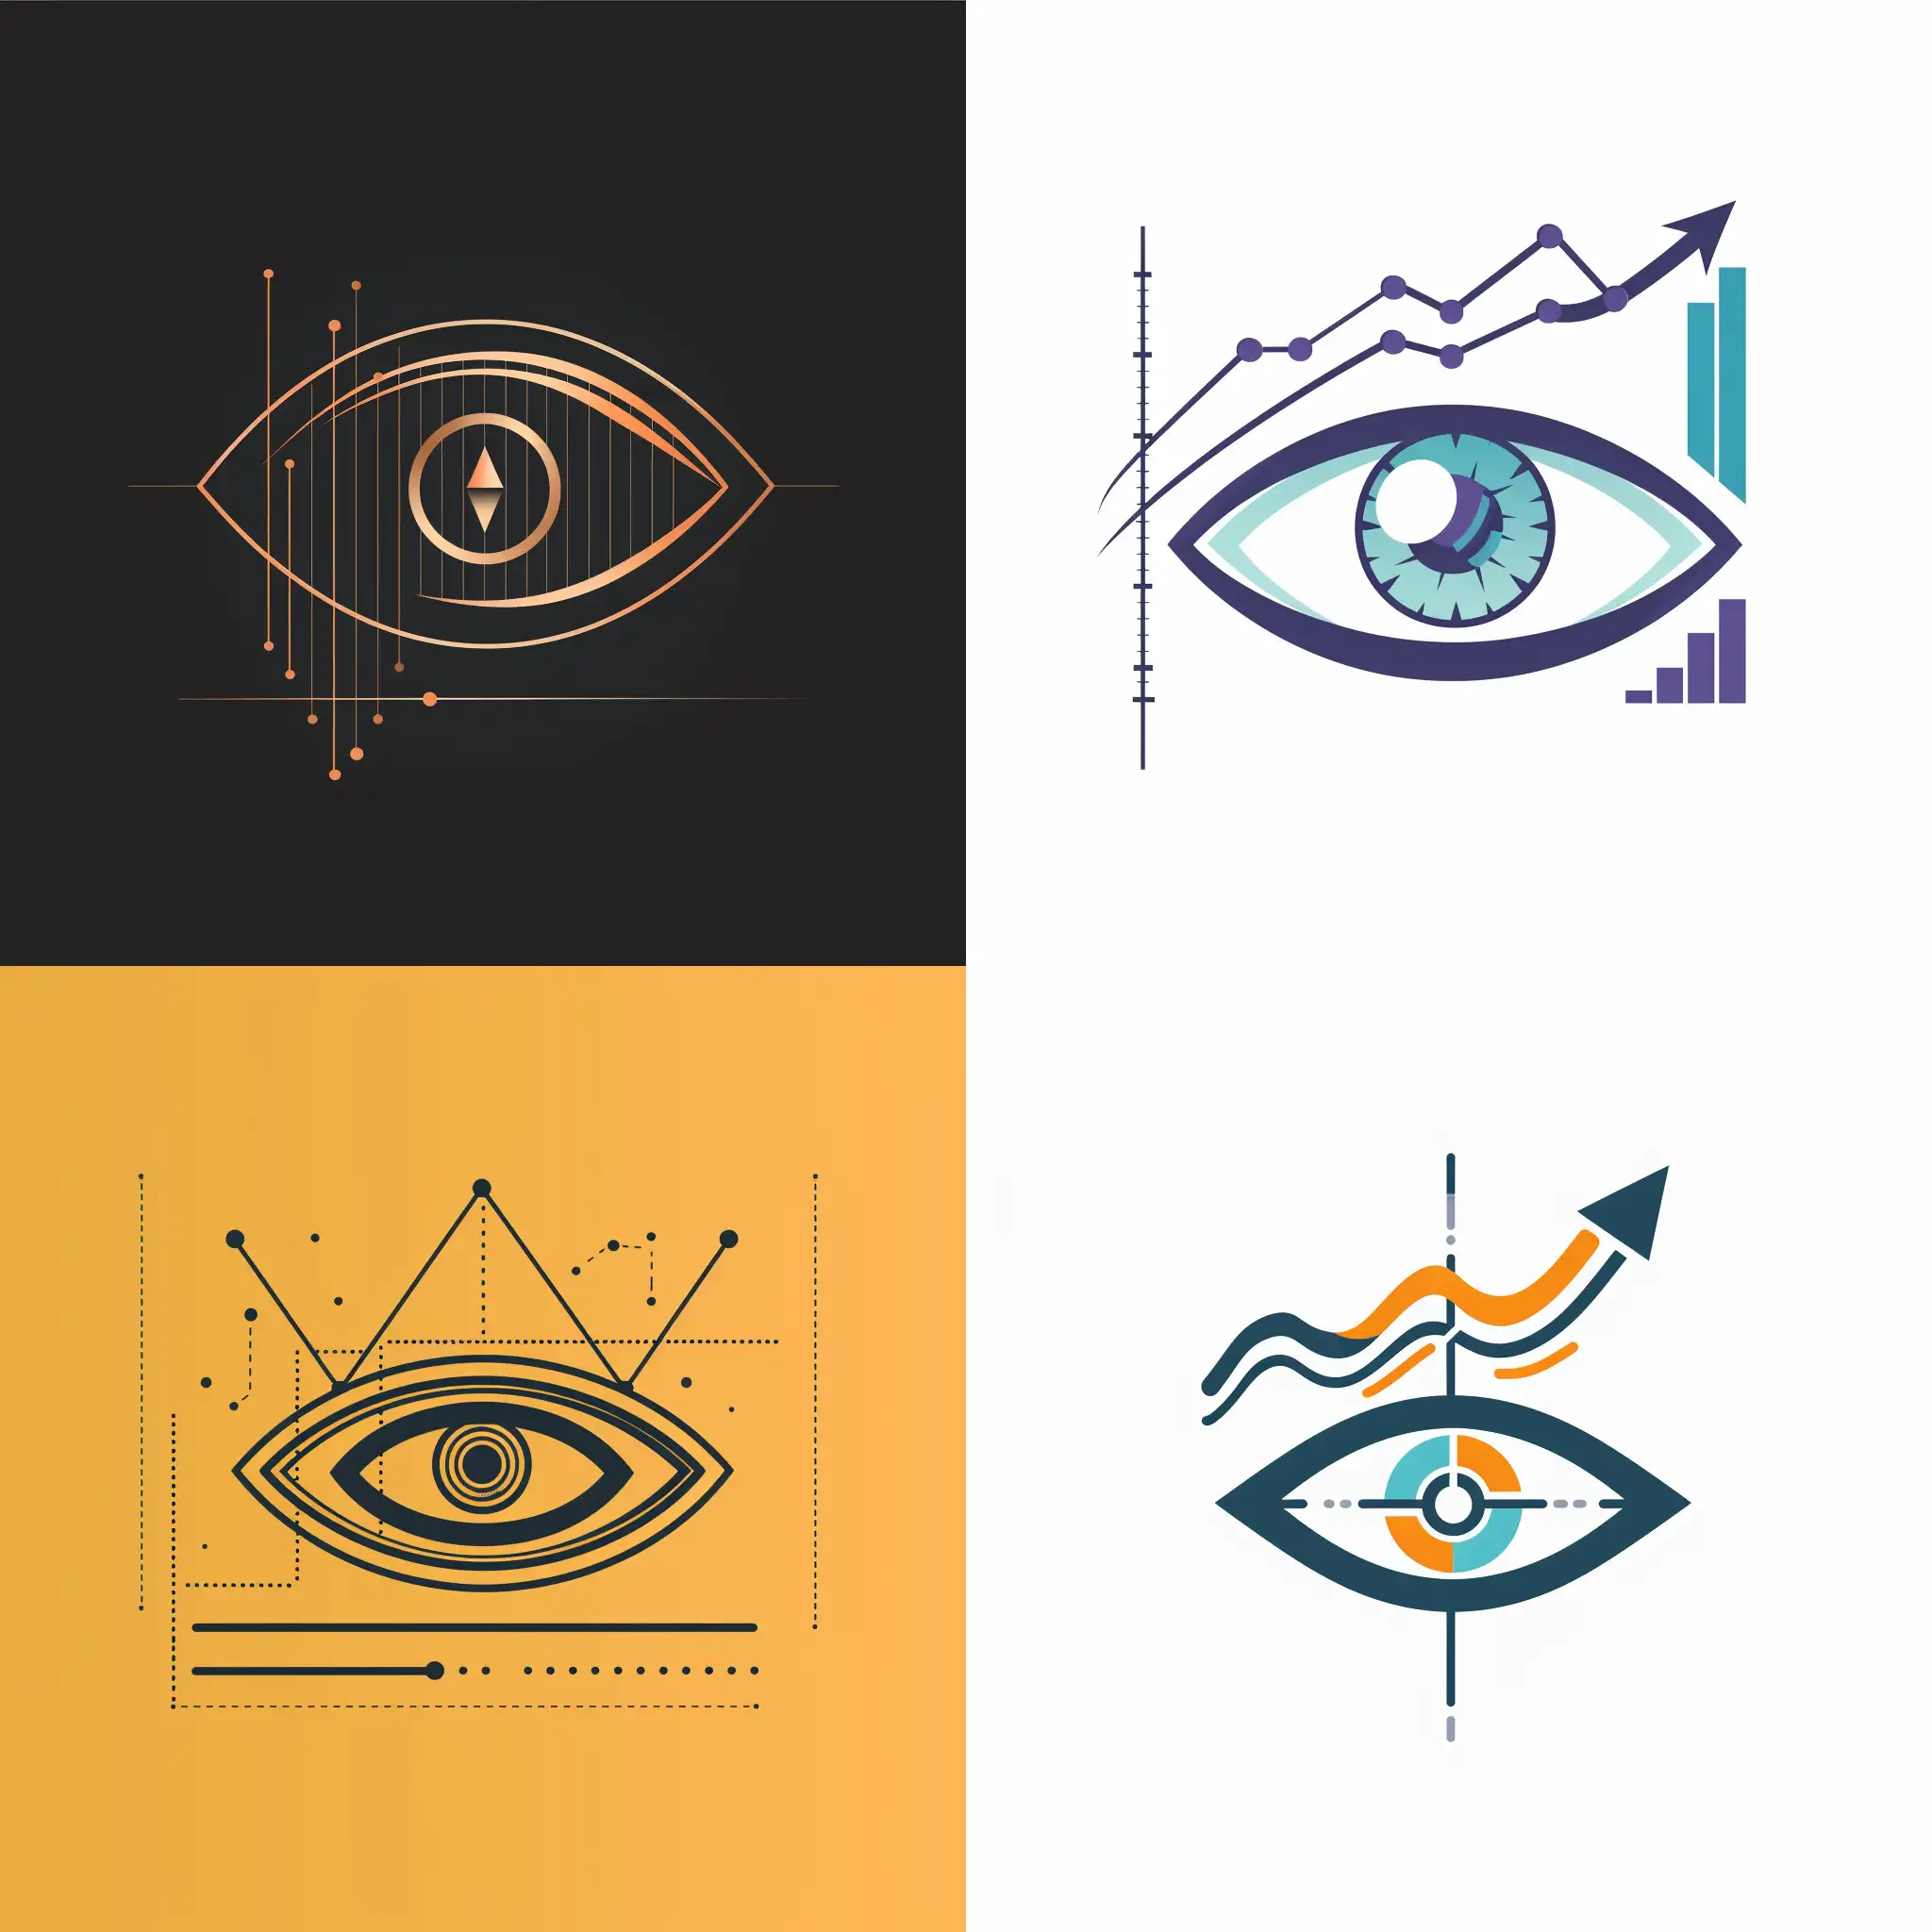 Dynamic-Growth-Modern-Stylized-Eye-Logo-for-Digital-Marketing-Agency